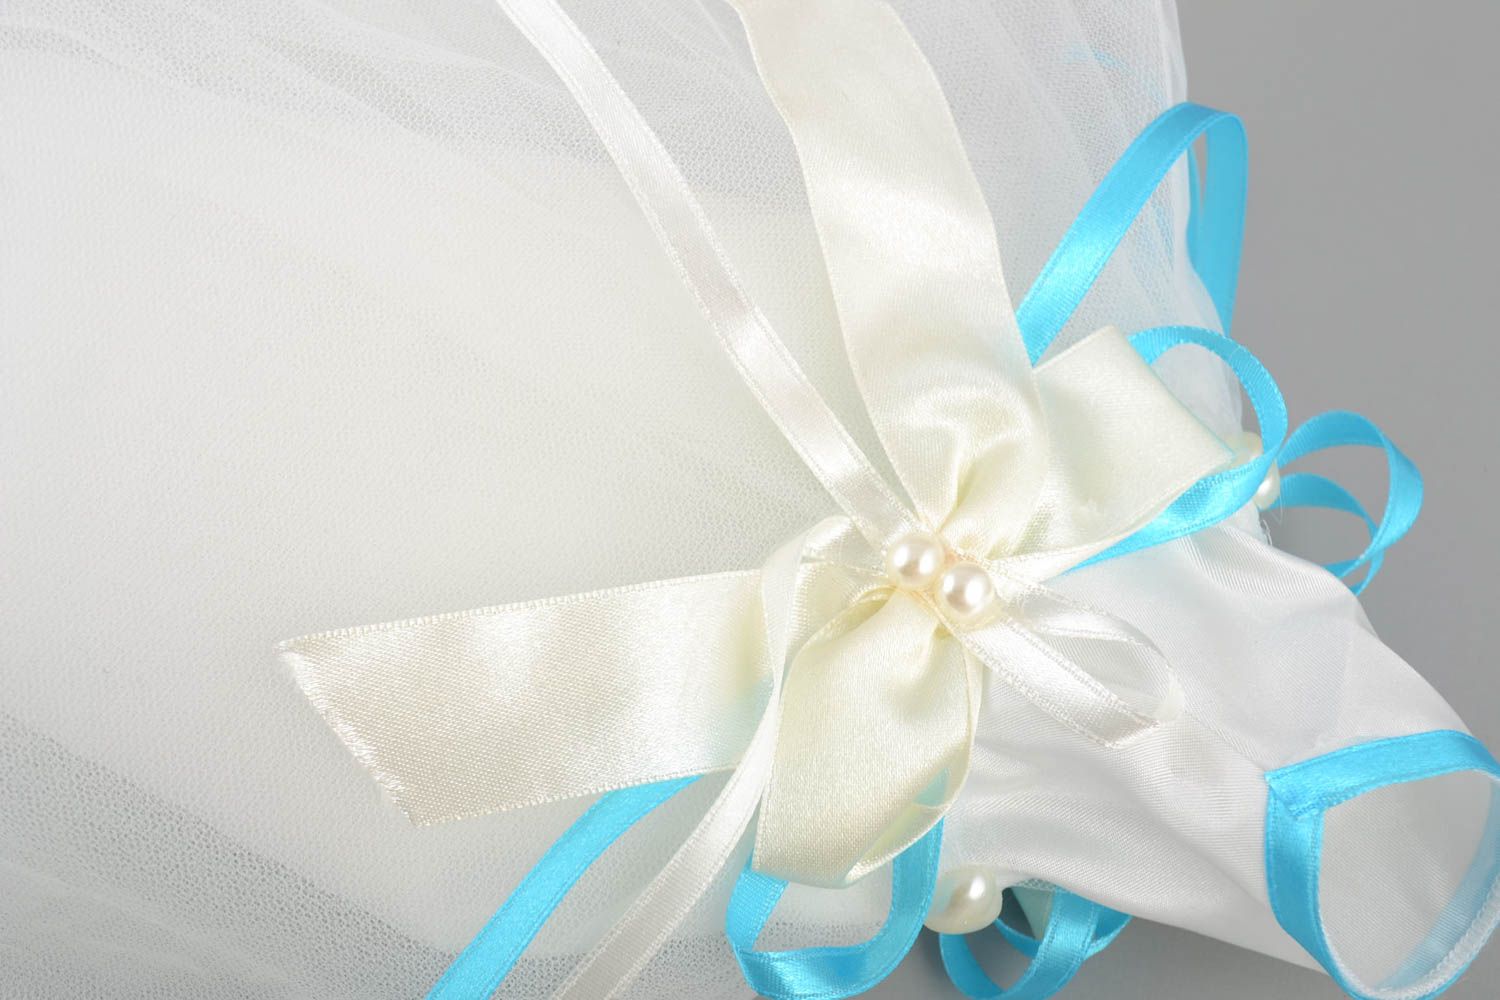 Одежда невесты на бутылку шампанского белая с голубым красивая ручной работы фото 3